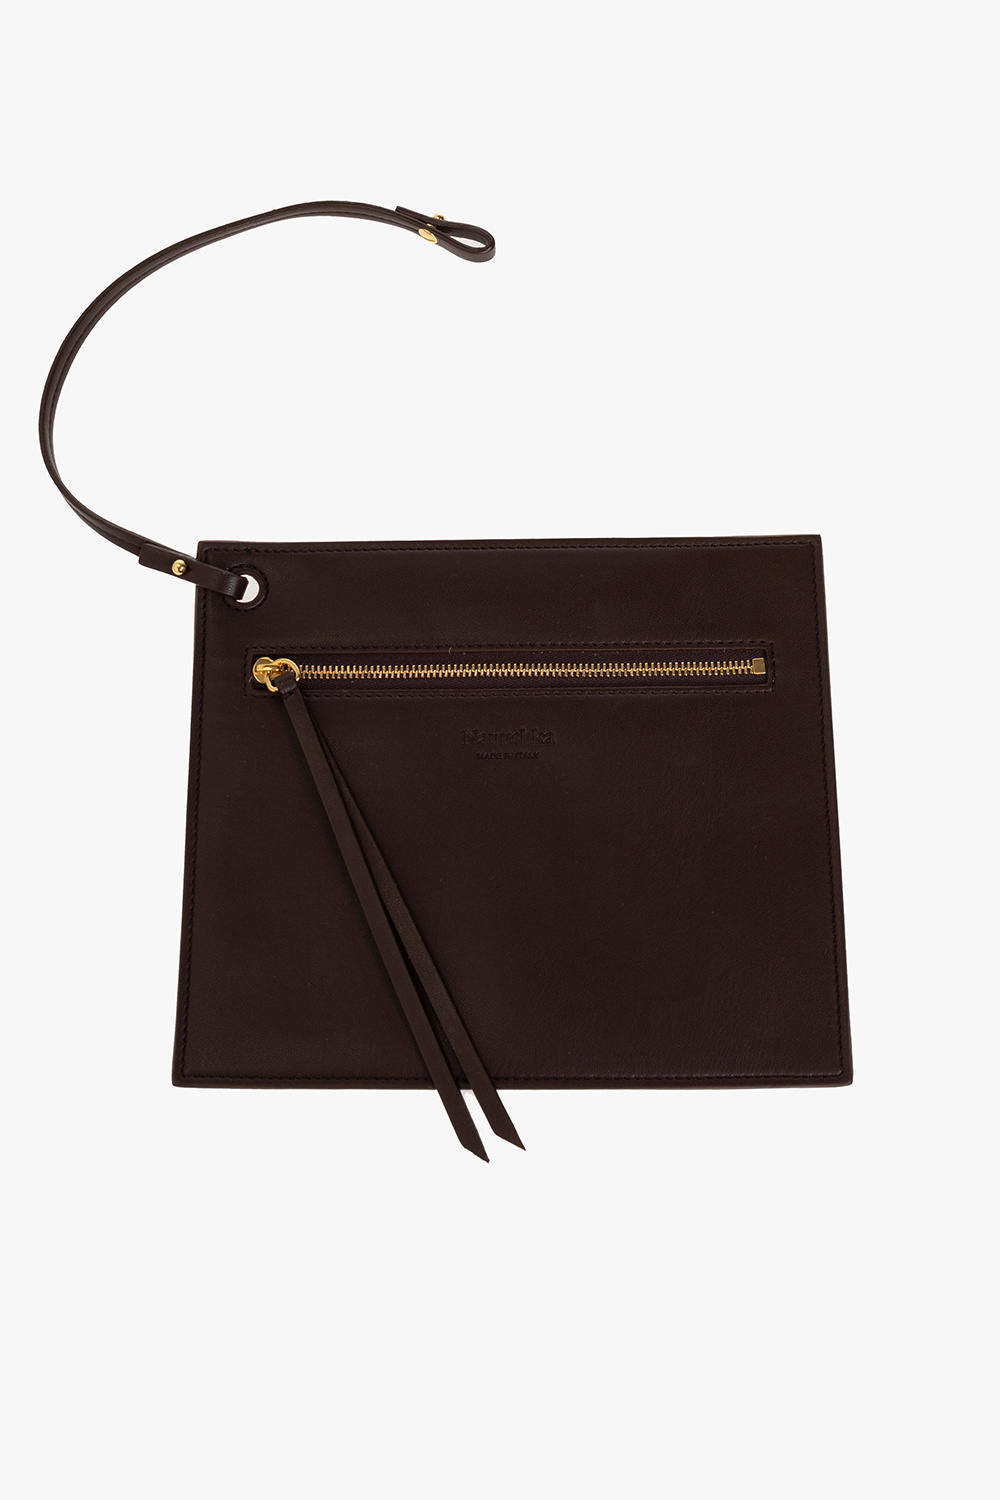 Nanushka ‘Origami’ shopper bag